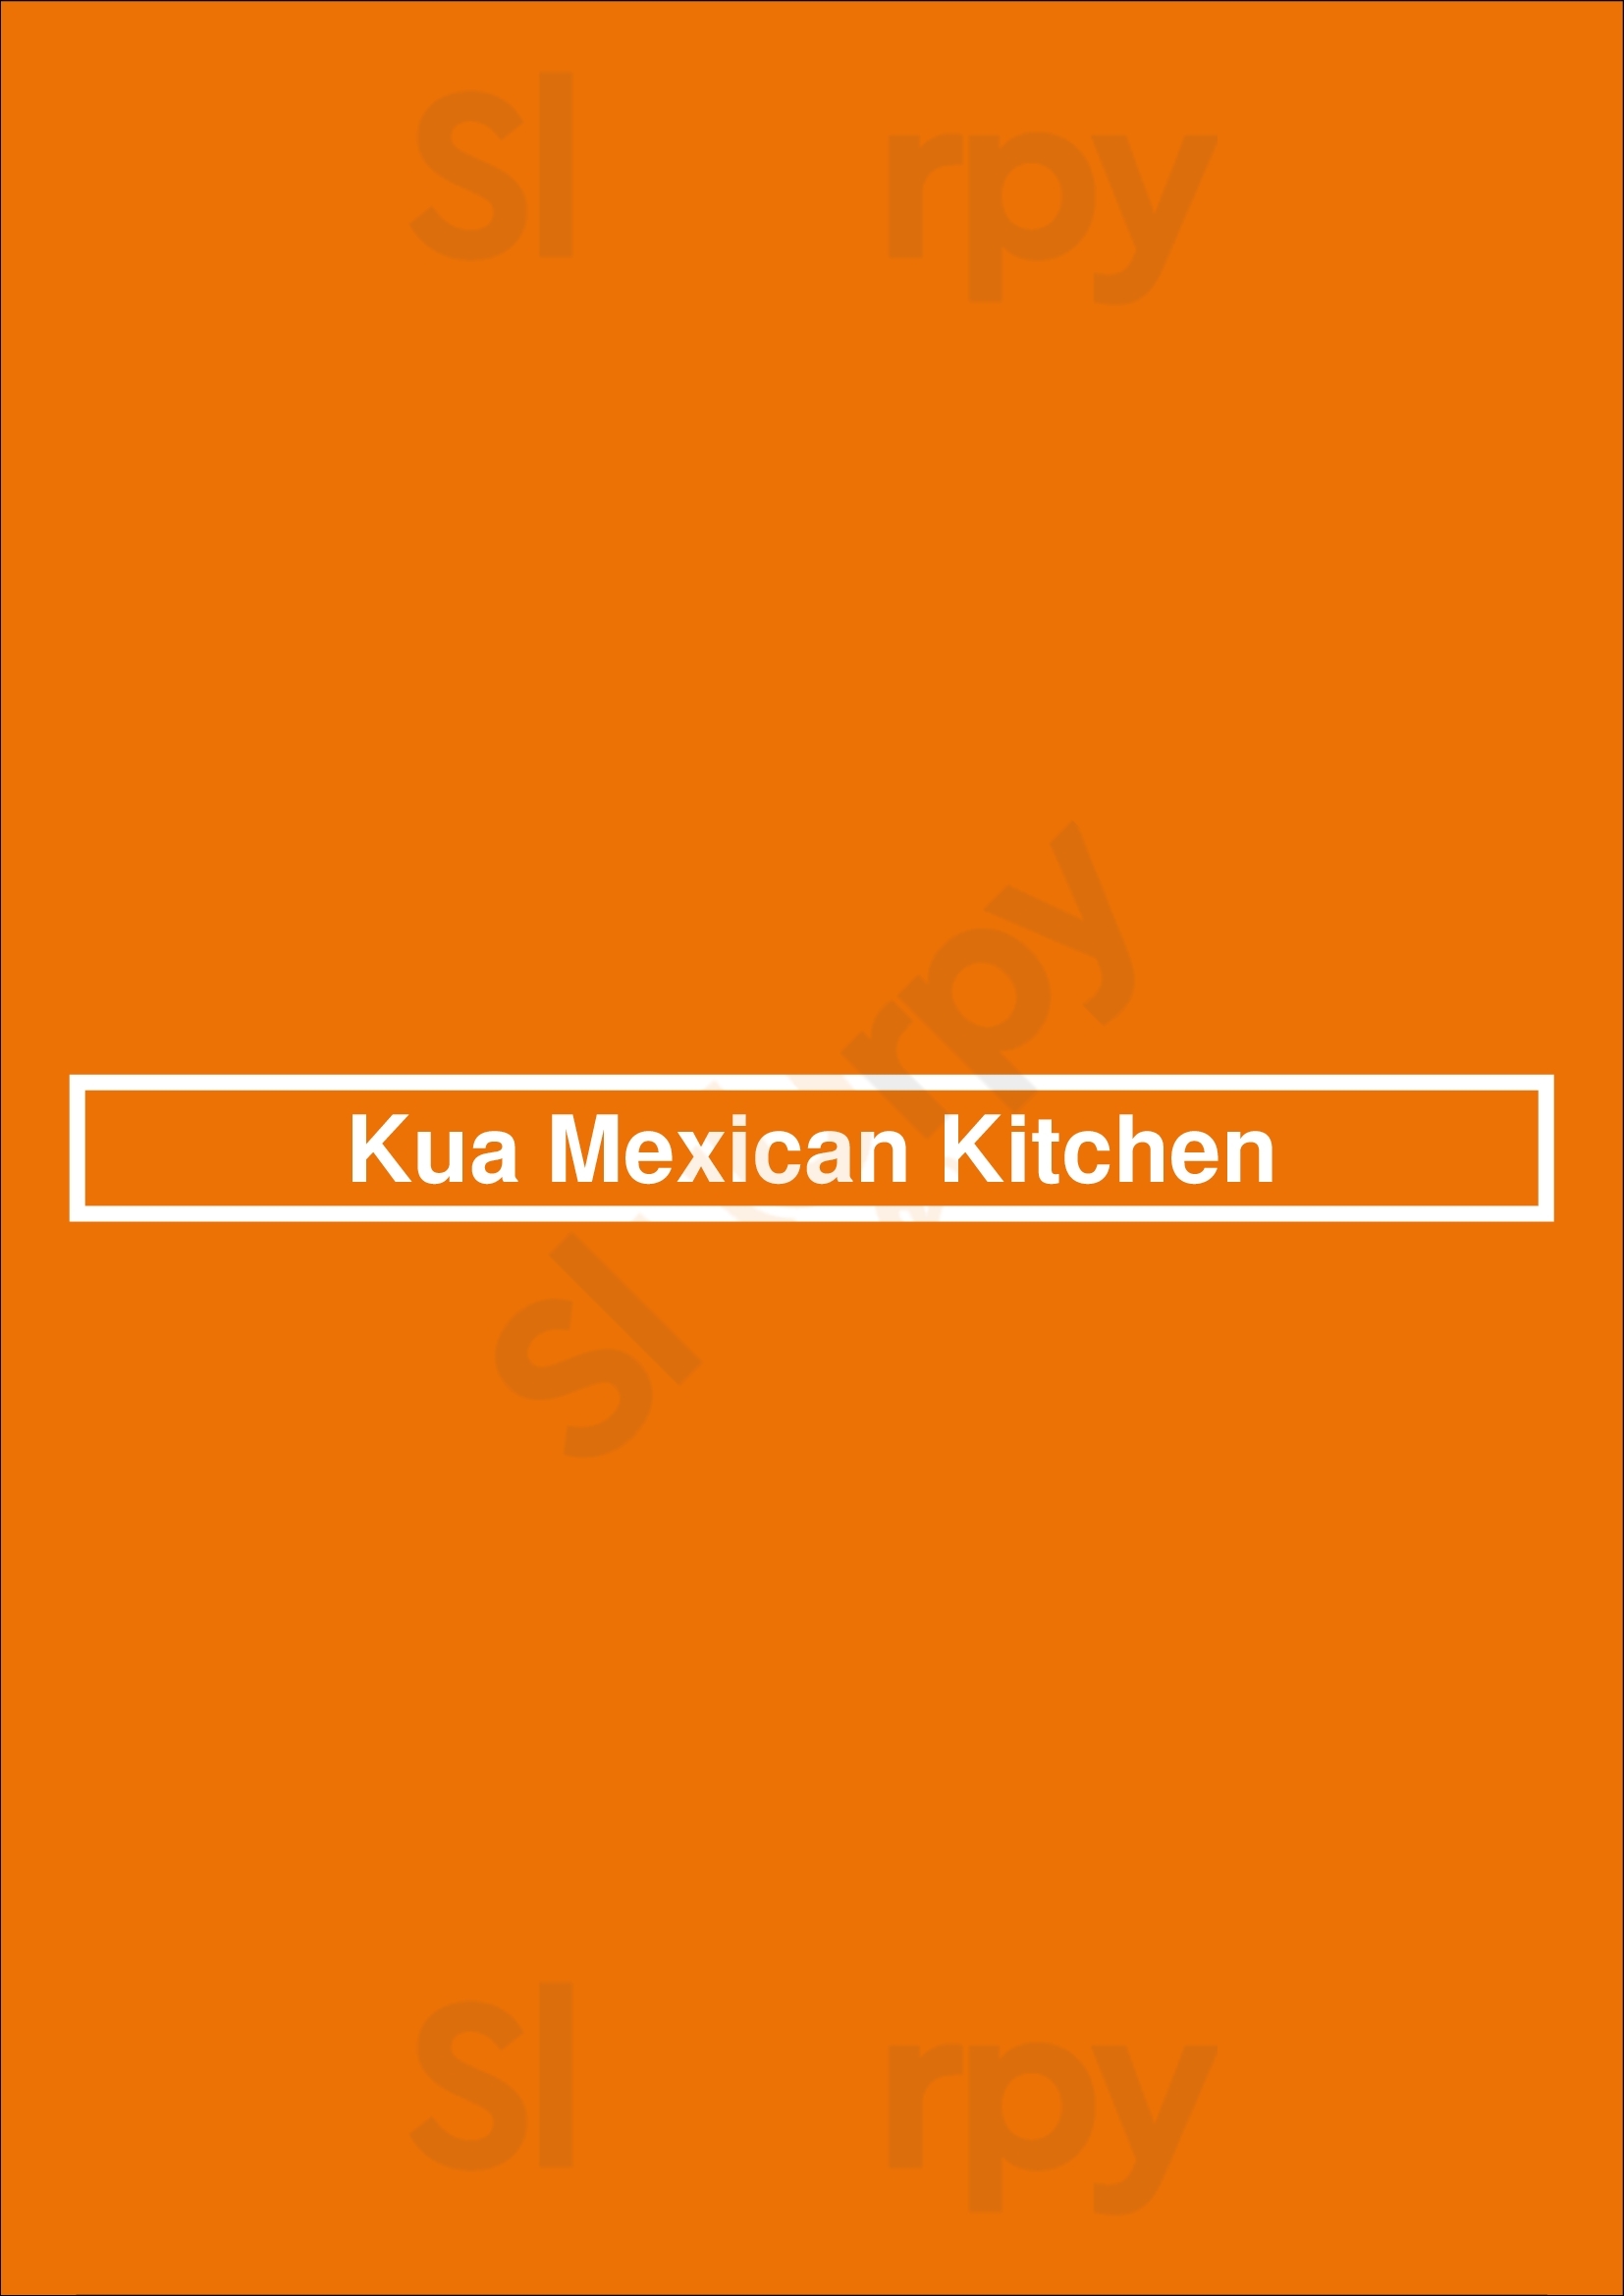 Kua Mexican Kitchen Den Haag Menu - 1